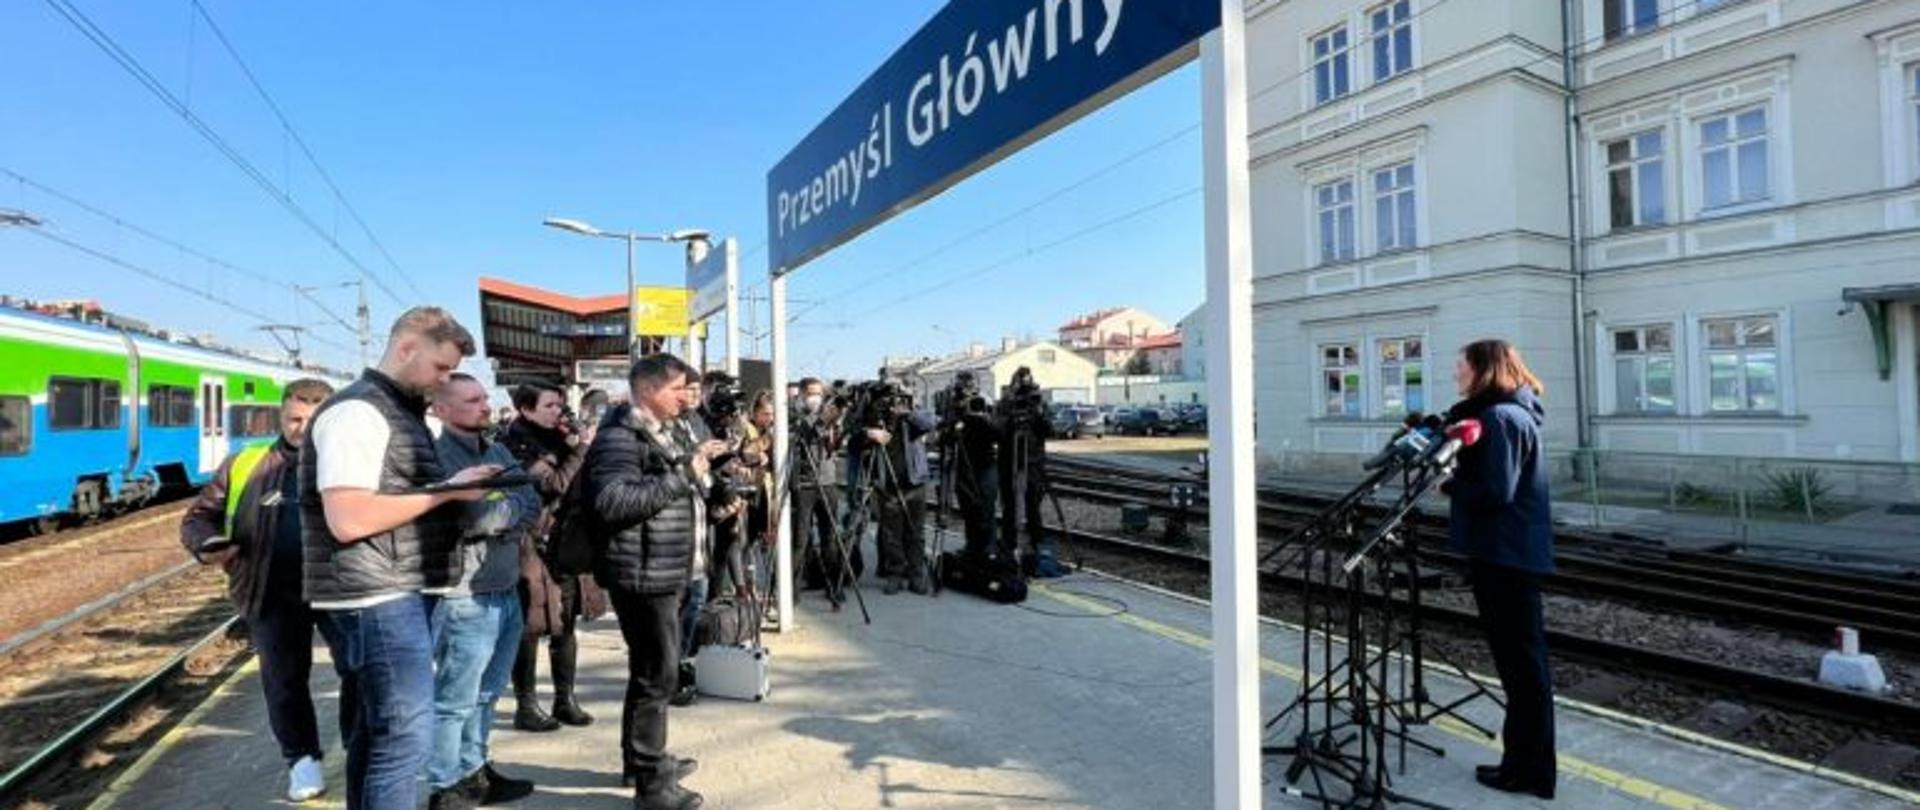 Wojewoda podkarpacki Ewa Leniart zabiera głos na dworcu kolejowym w Przemyślu podczas konferencji prasowej dotyczącej transportu w ramach ruchu migracyjnego. Przed wojewodą stoją dziennikarze, za nimi fragment pociągu